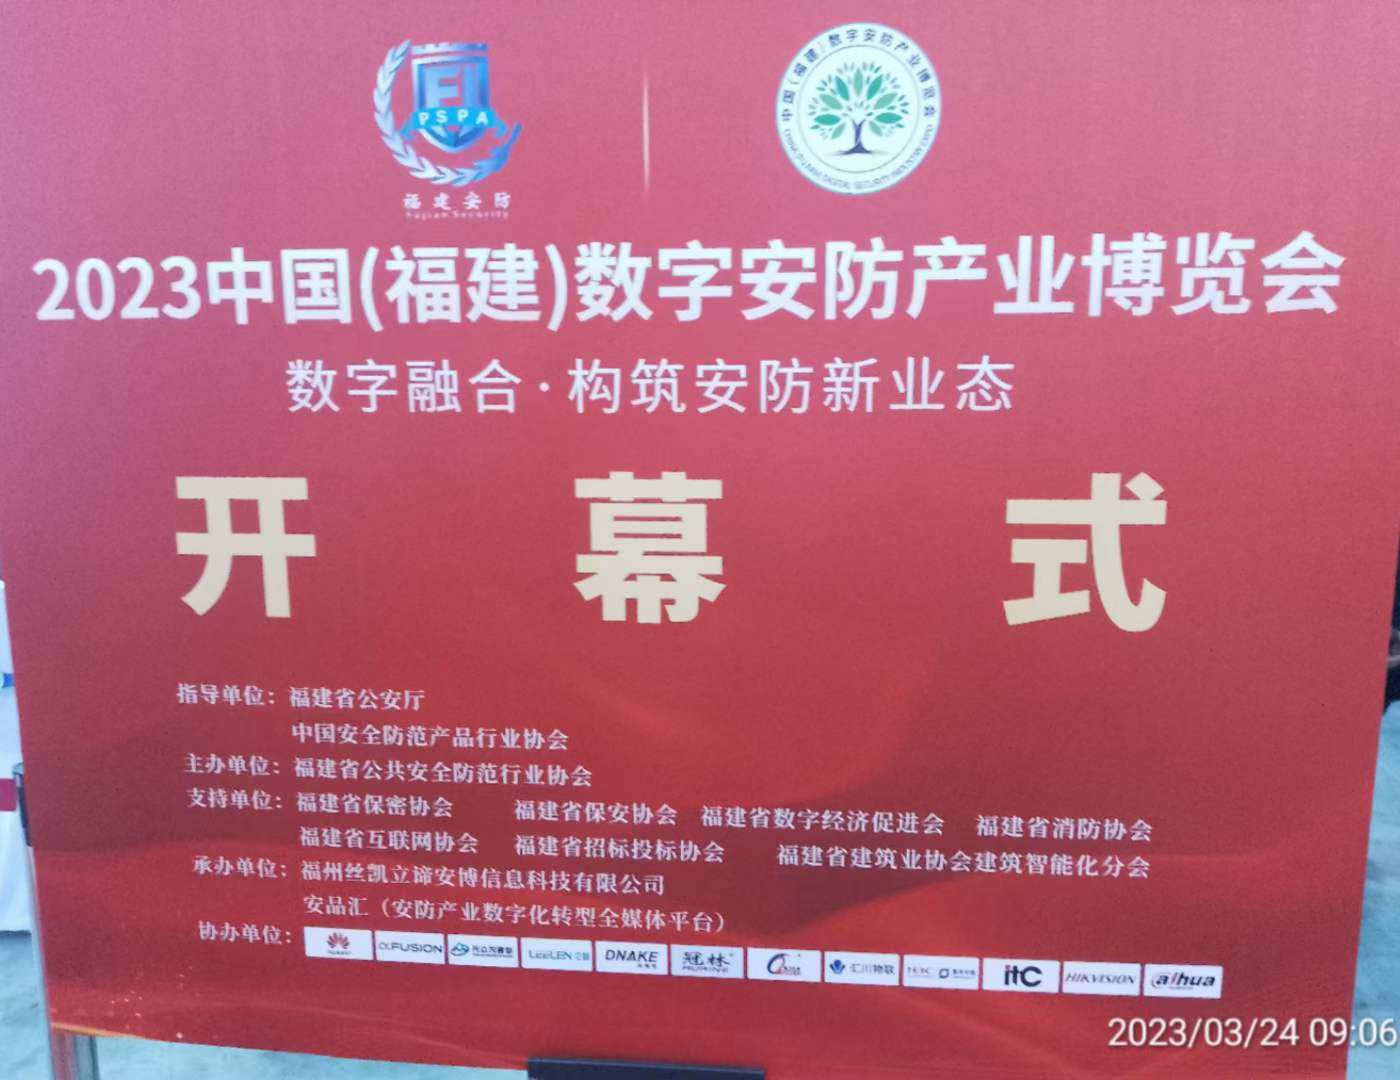 陕西省安防协会组织获奖单位参加2023中国（福建）数字安防产业博览会